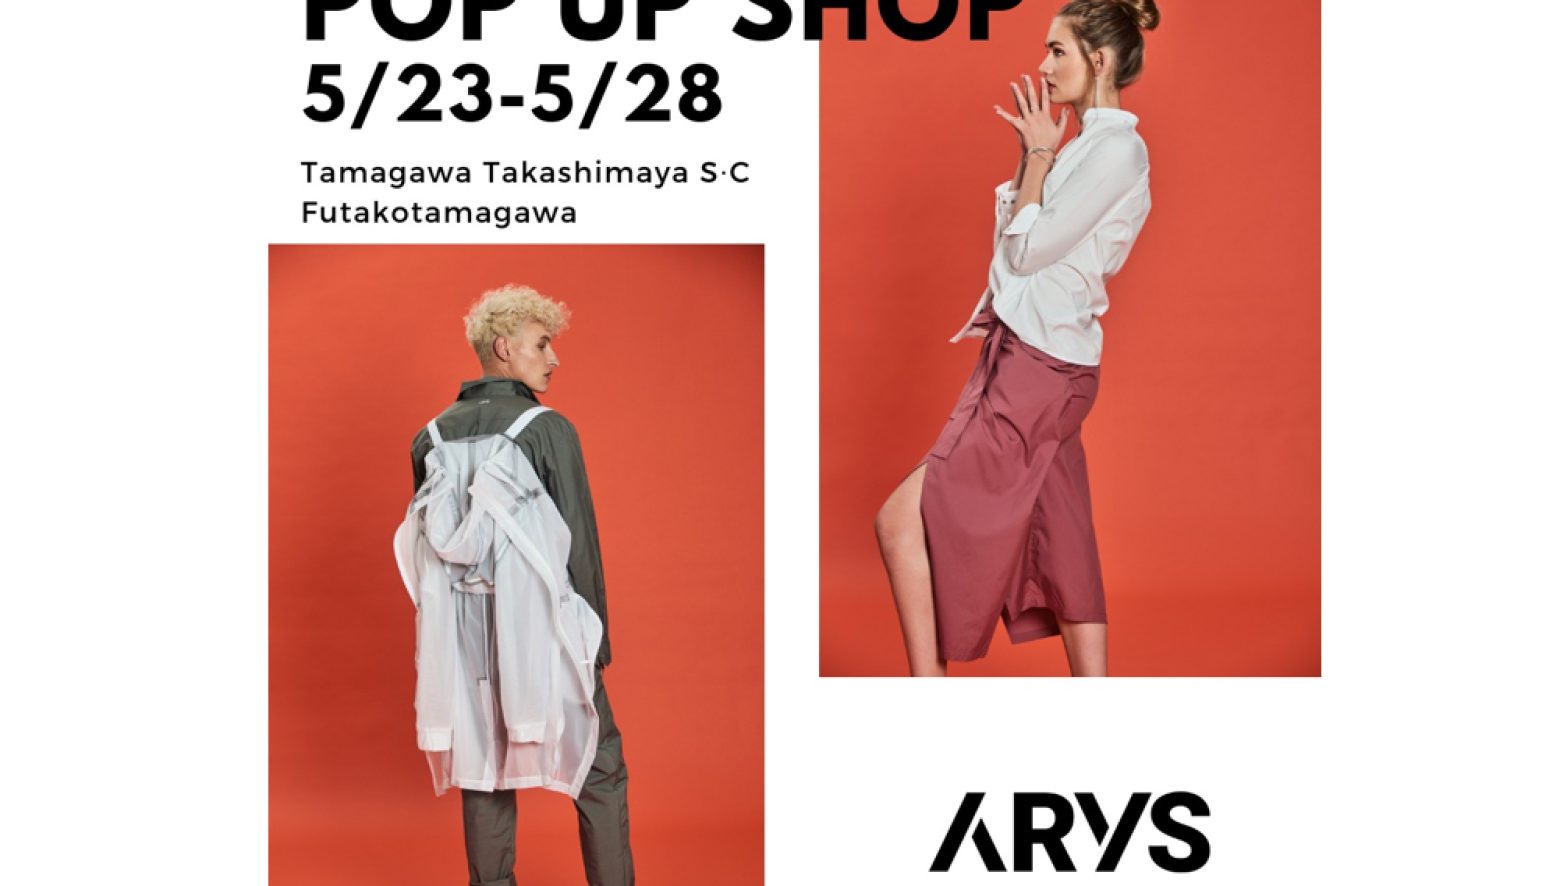 新進気鋭のブランド「ARYS」の日本初ポップアップが、玉川髙島屋S・Cにて開催。